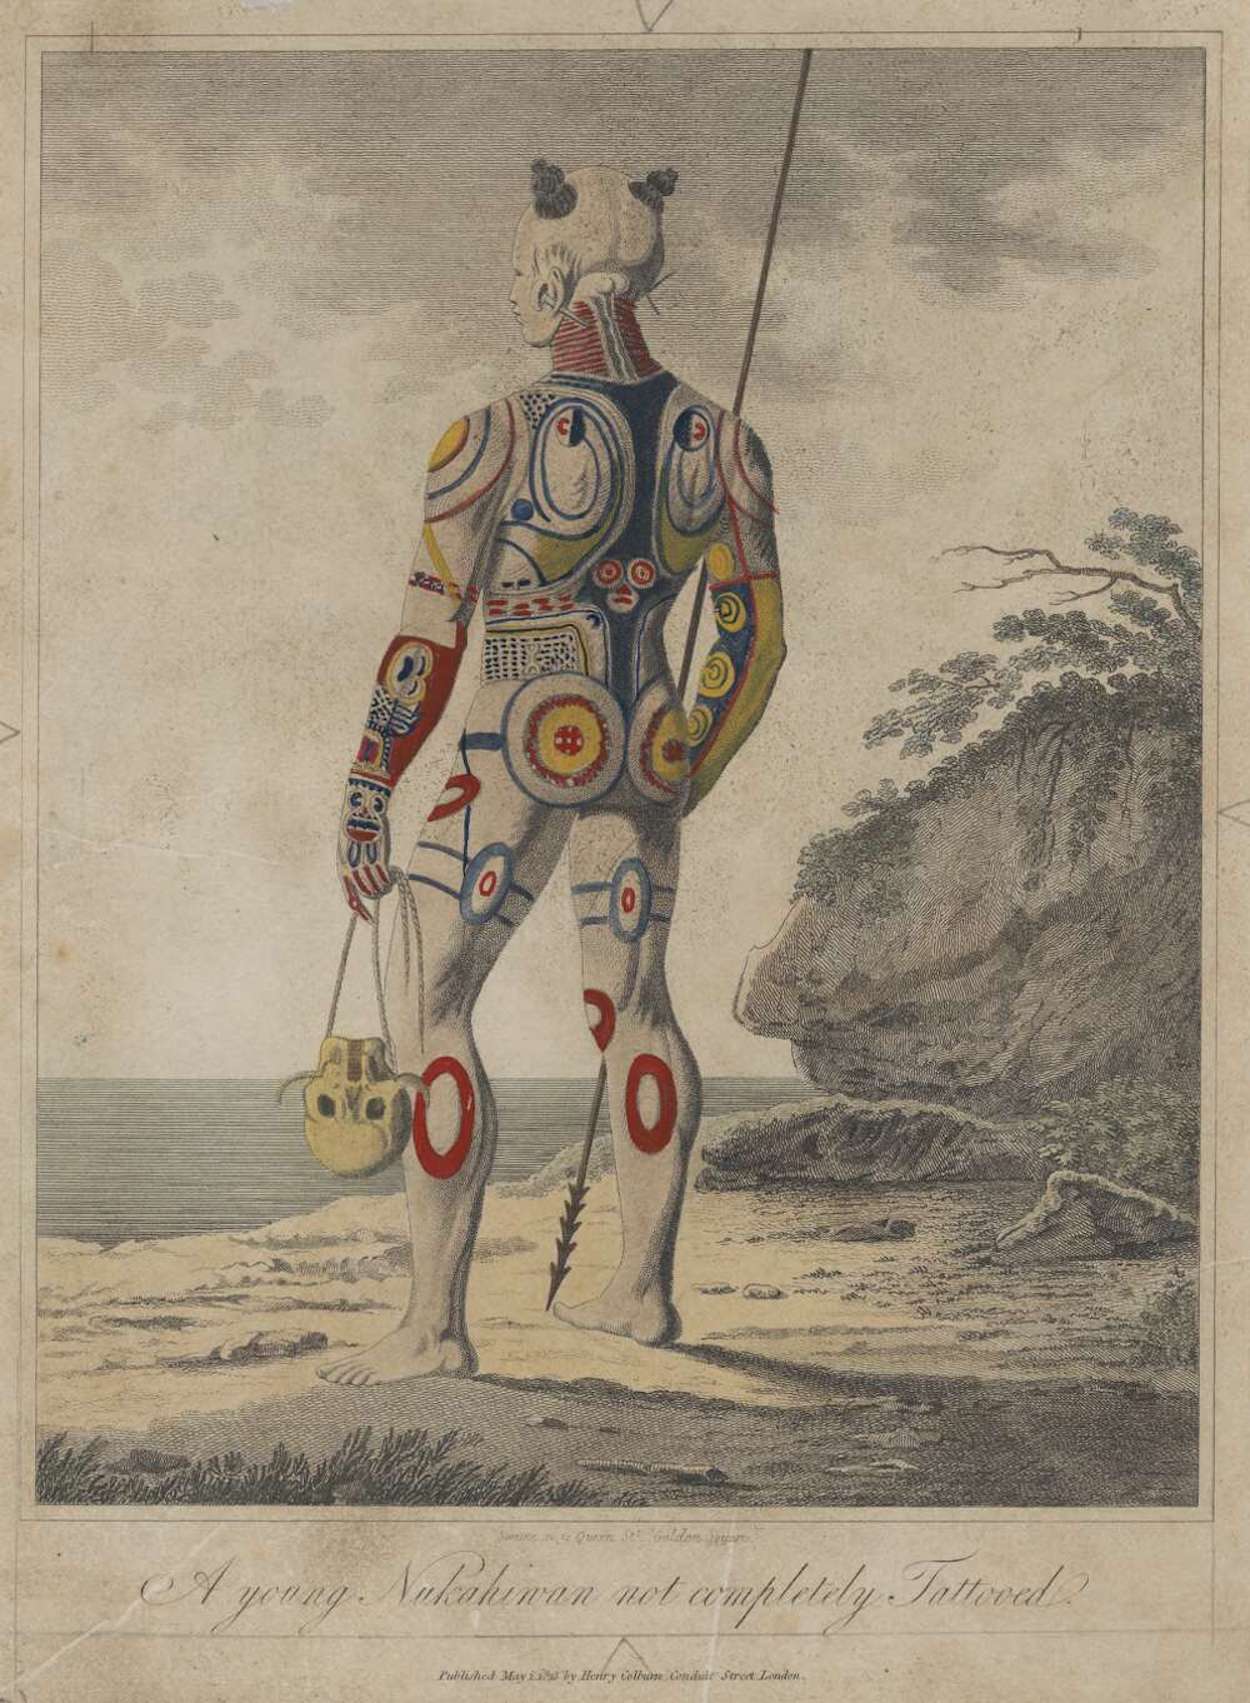 Um jovem Nukahiwan não completamente tatuado by John Swaine - 1813 - 26.4 x 20 cm coleção privada